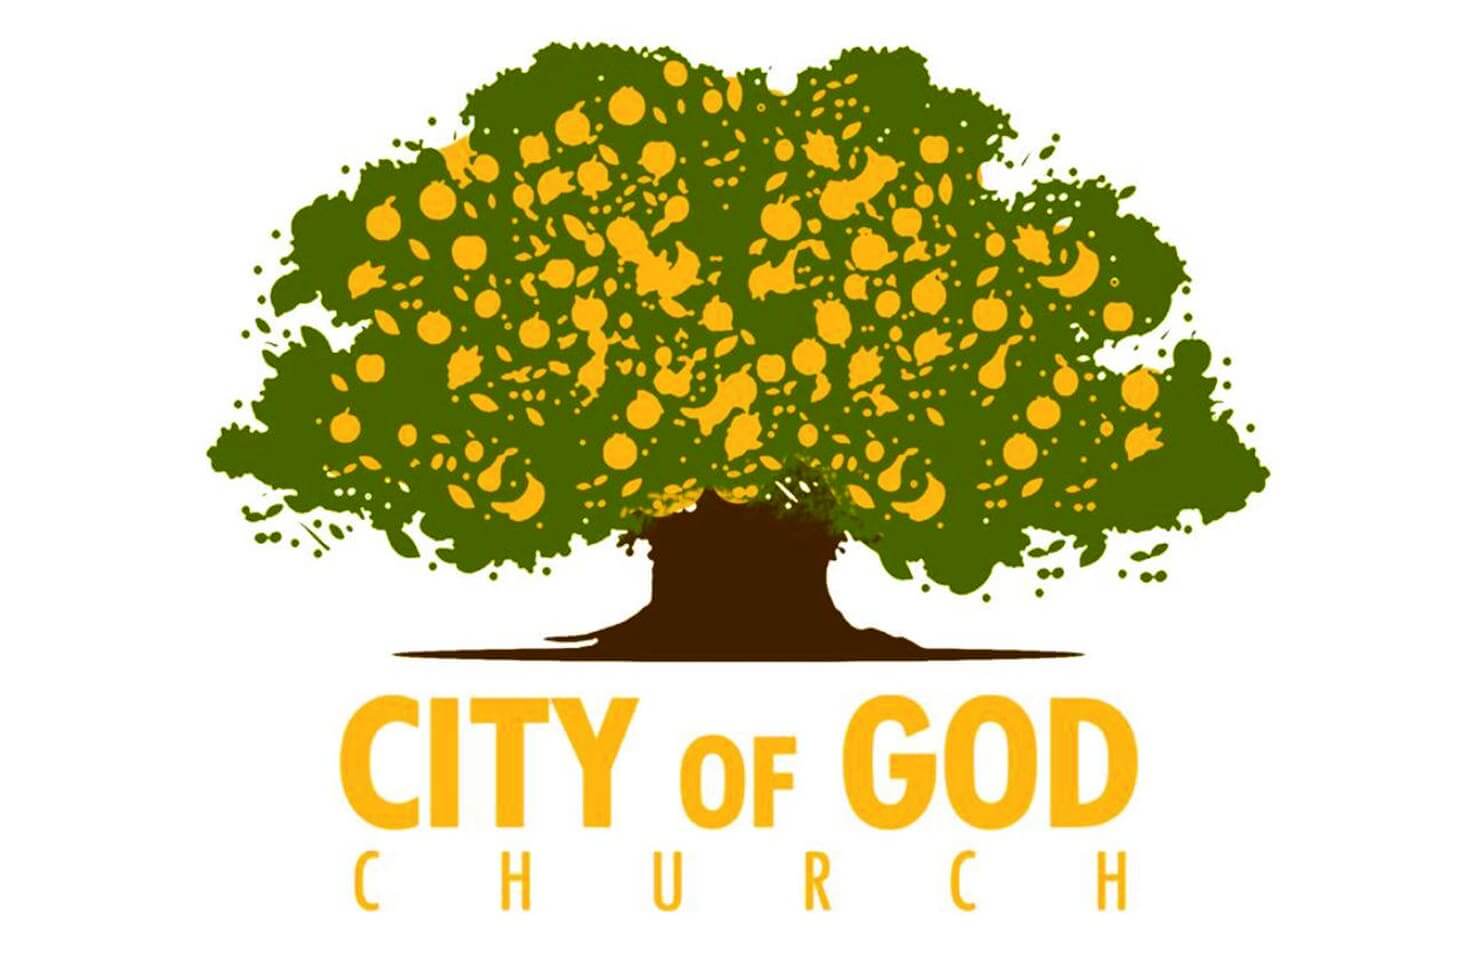 Apostolic-vehicle_City of God2-min